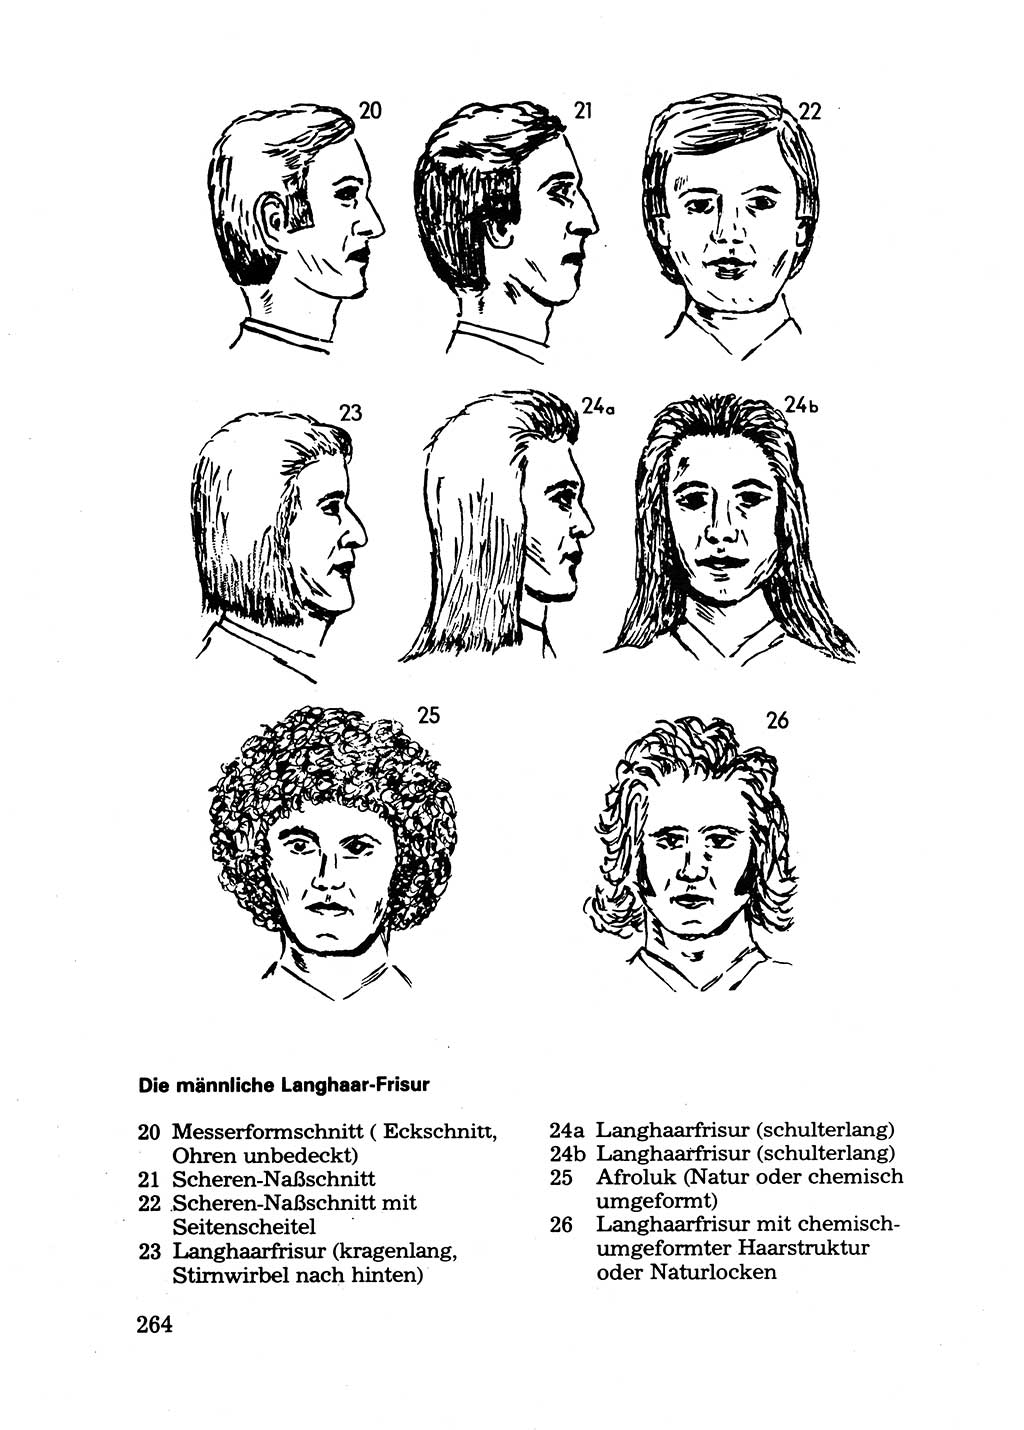 Das subjektive Porträt [Deutsche Demokratische Republik (DDR)] 1981, Seite 264 (Subj. Port. DDR 1981, S. 264)